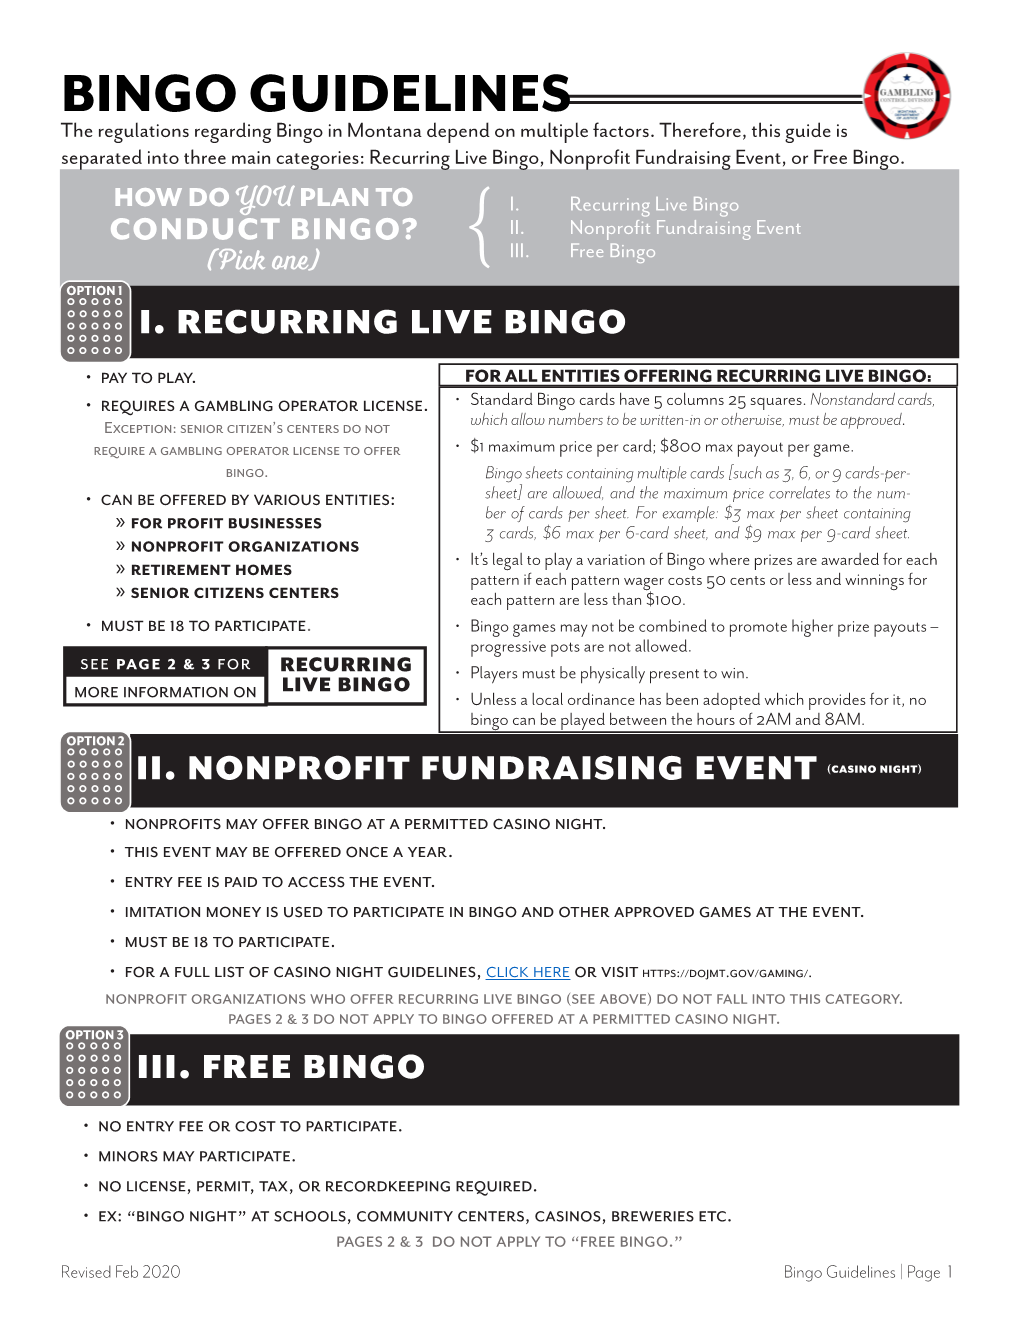 BINGO GUIDELINES the Regulations Regarding Bingo in Montana Depend on Multiple Factors